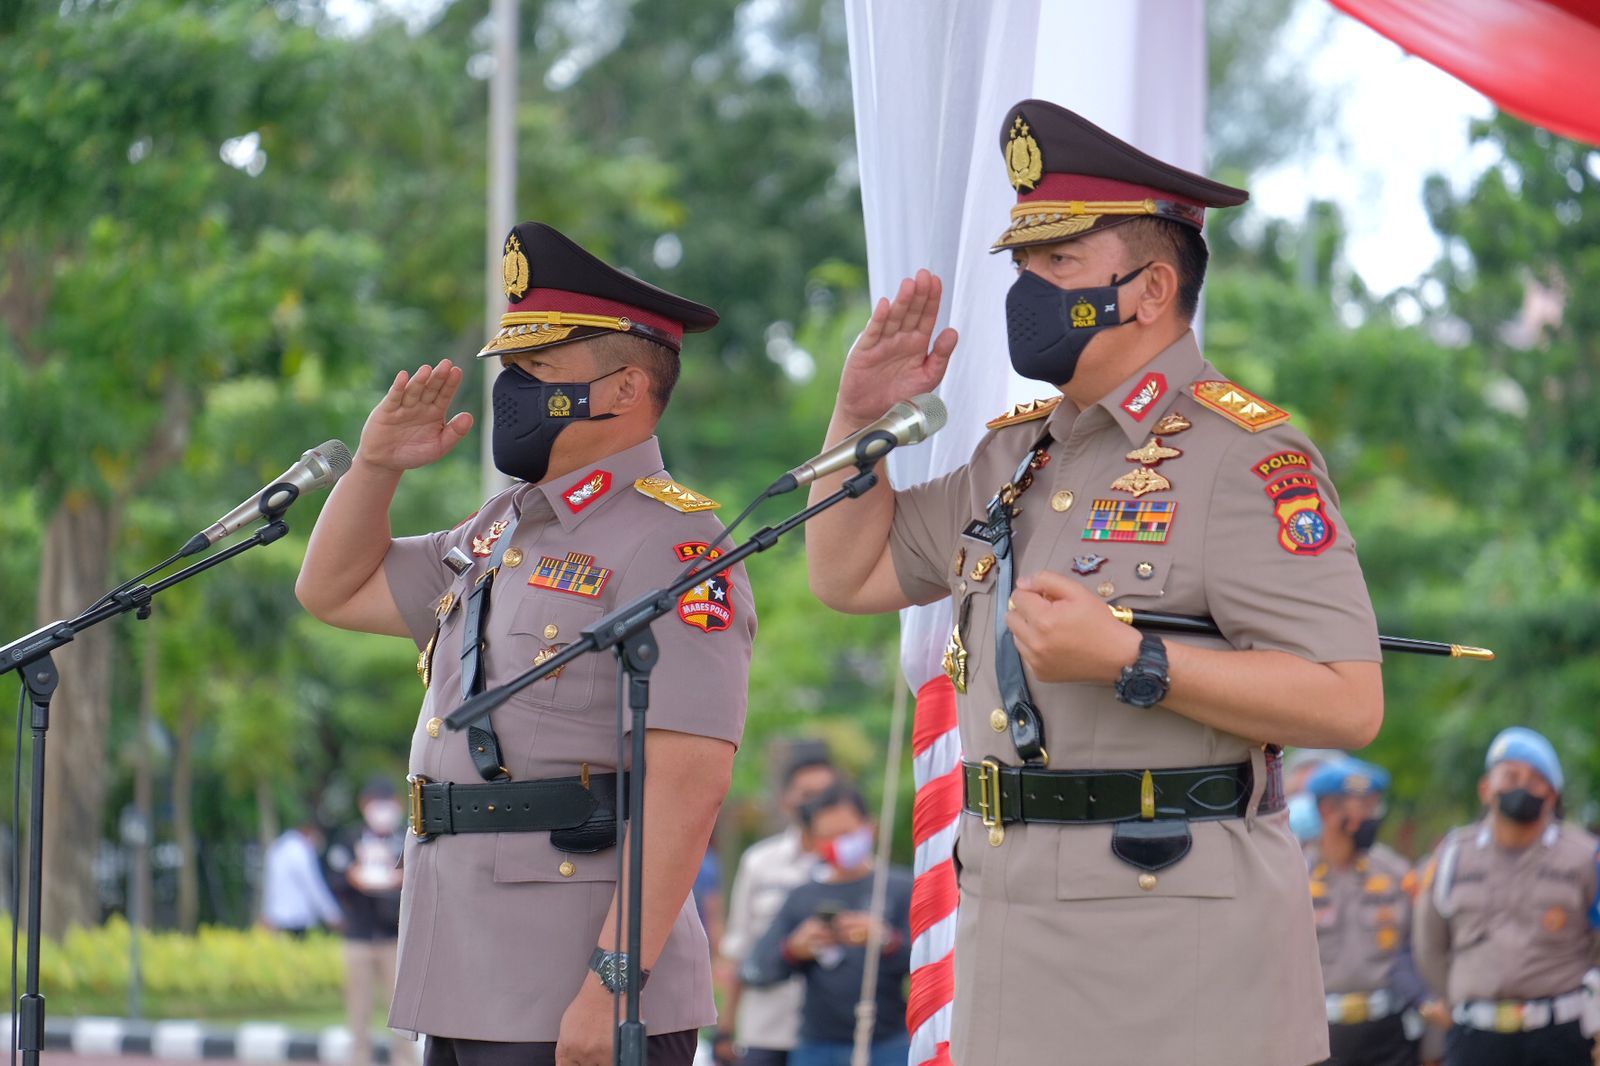 Farawell And Wellcome Parade Digelar, Polda Riau Miliki Pimpinan Baru